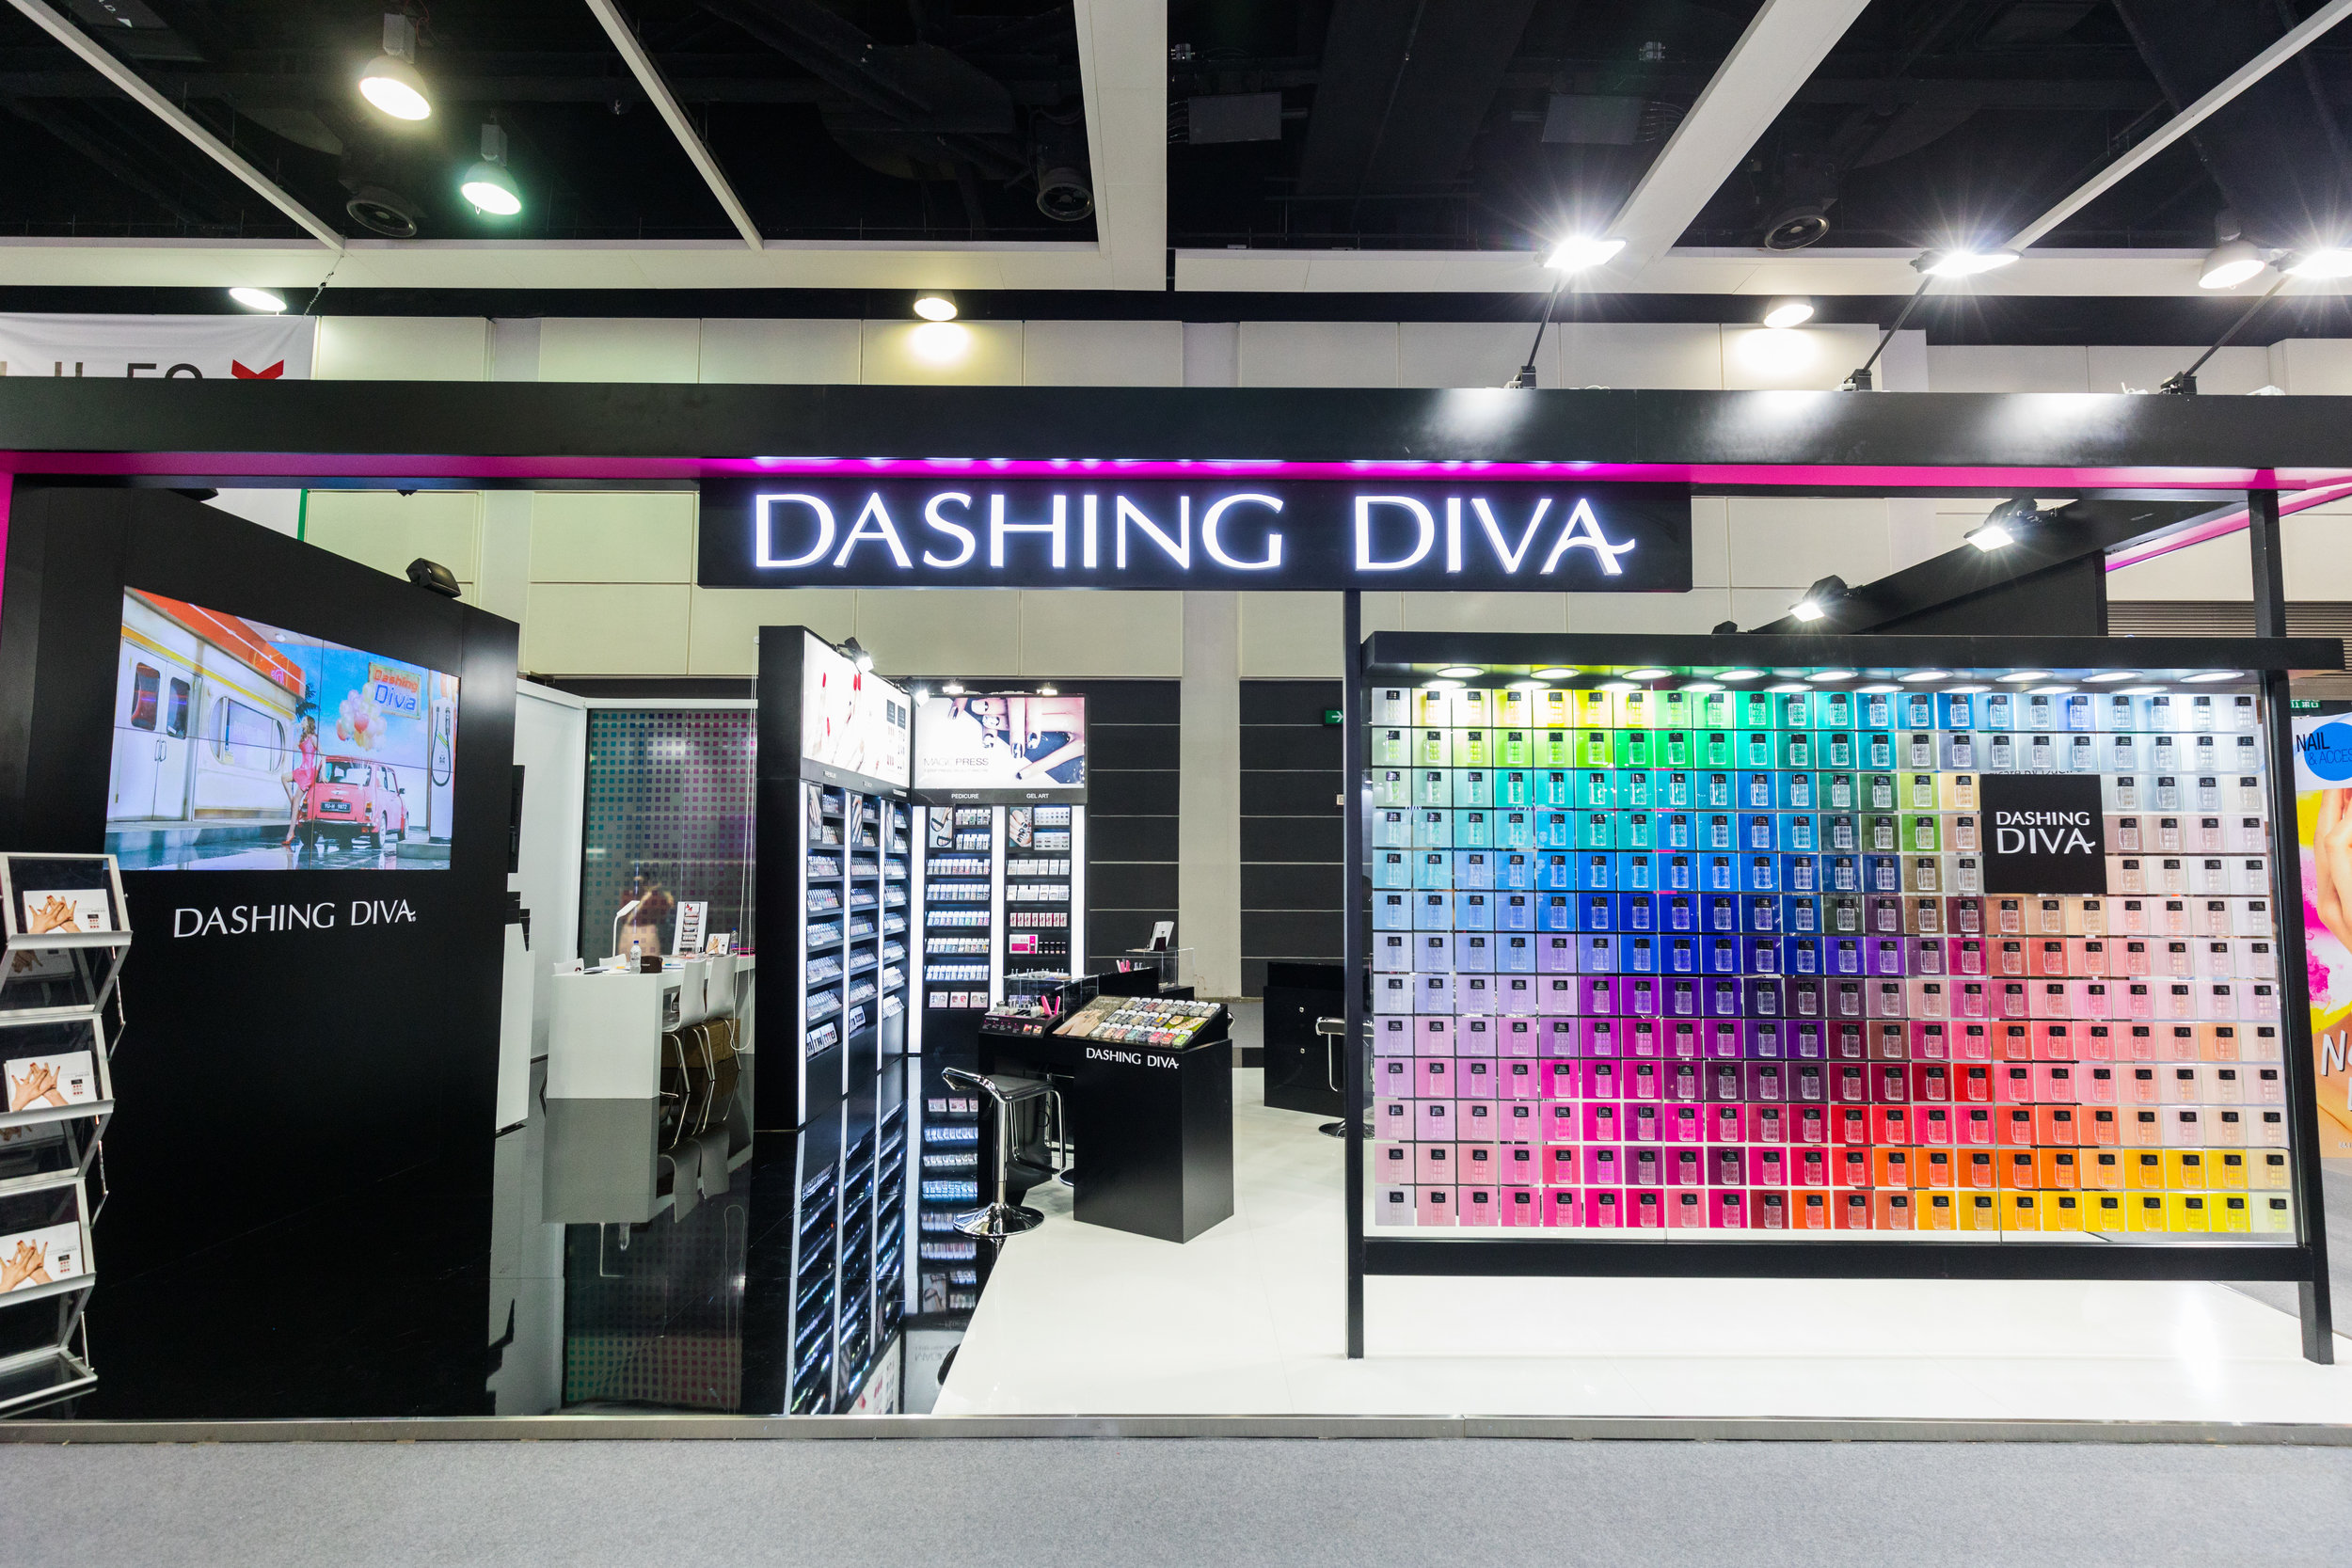 Dashing Diva Exhibition Event (Comsoprof-Asia)